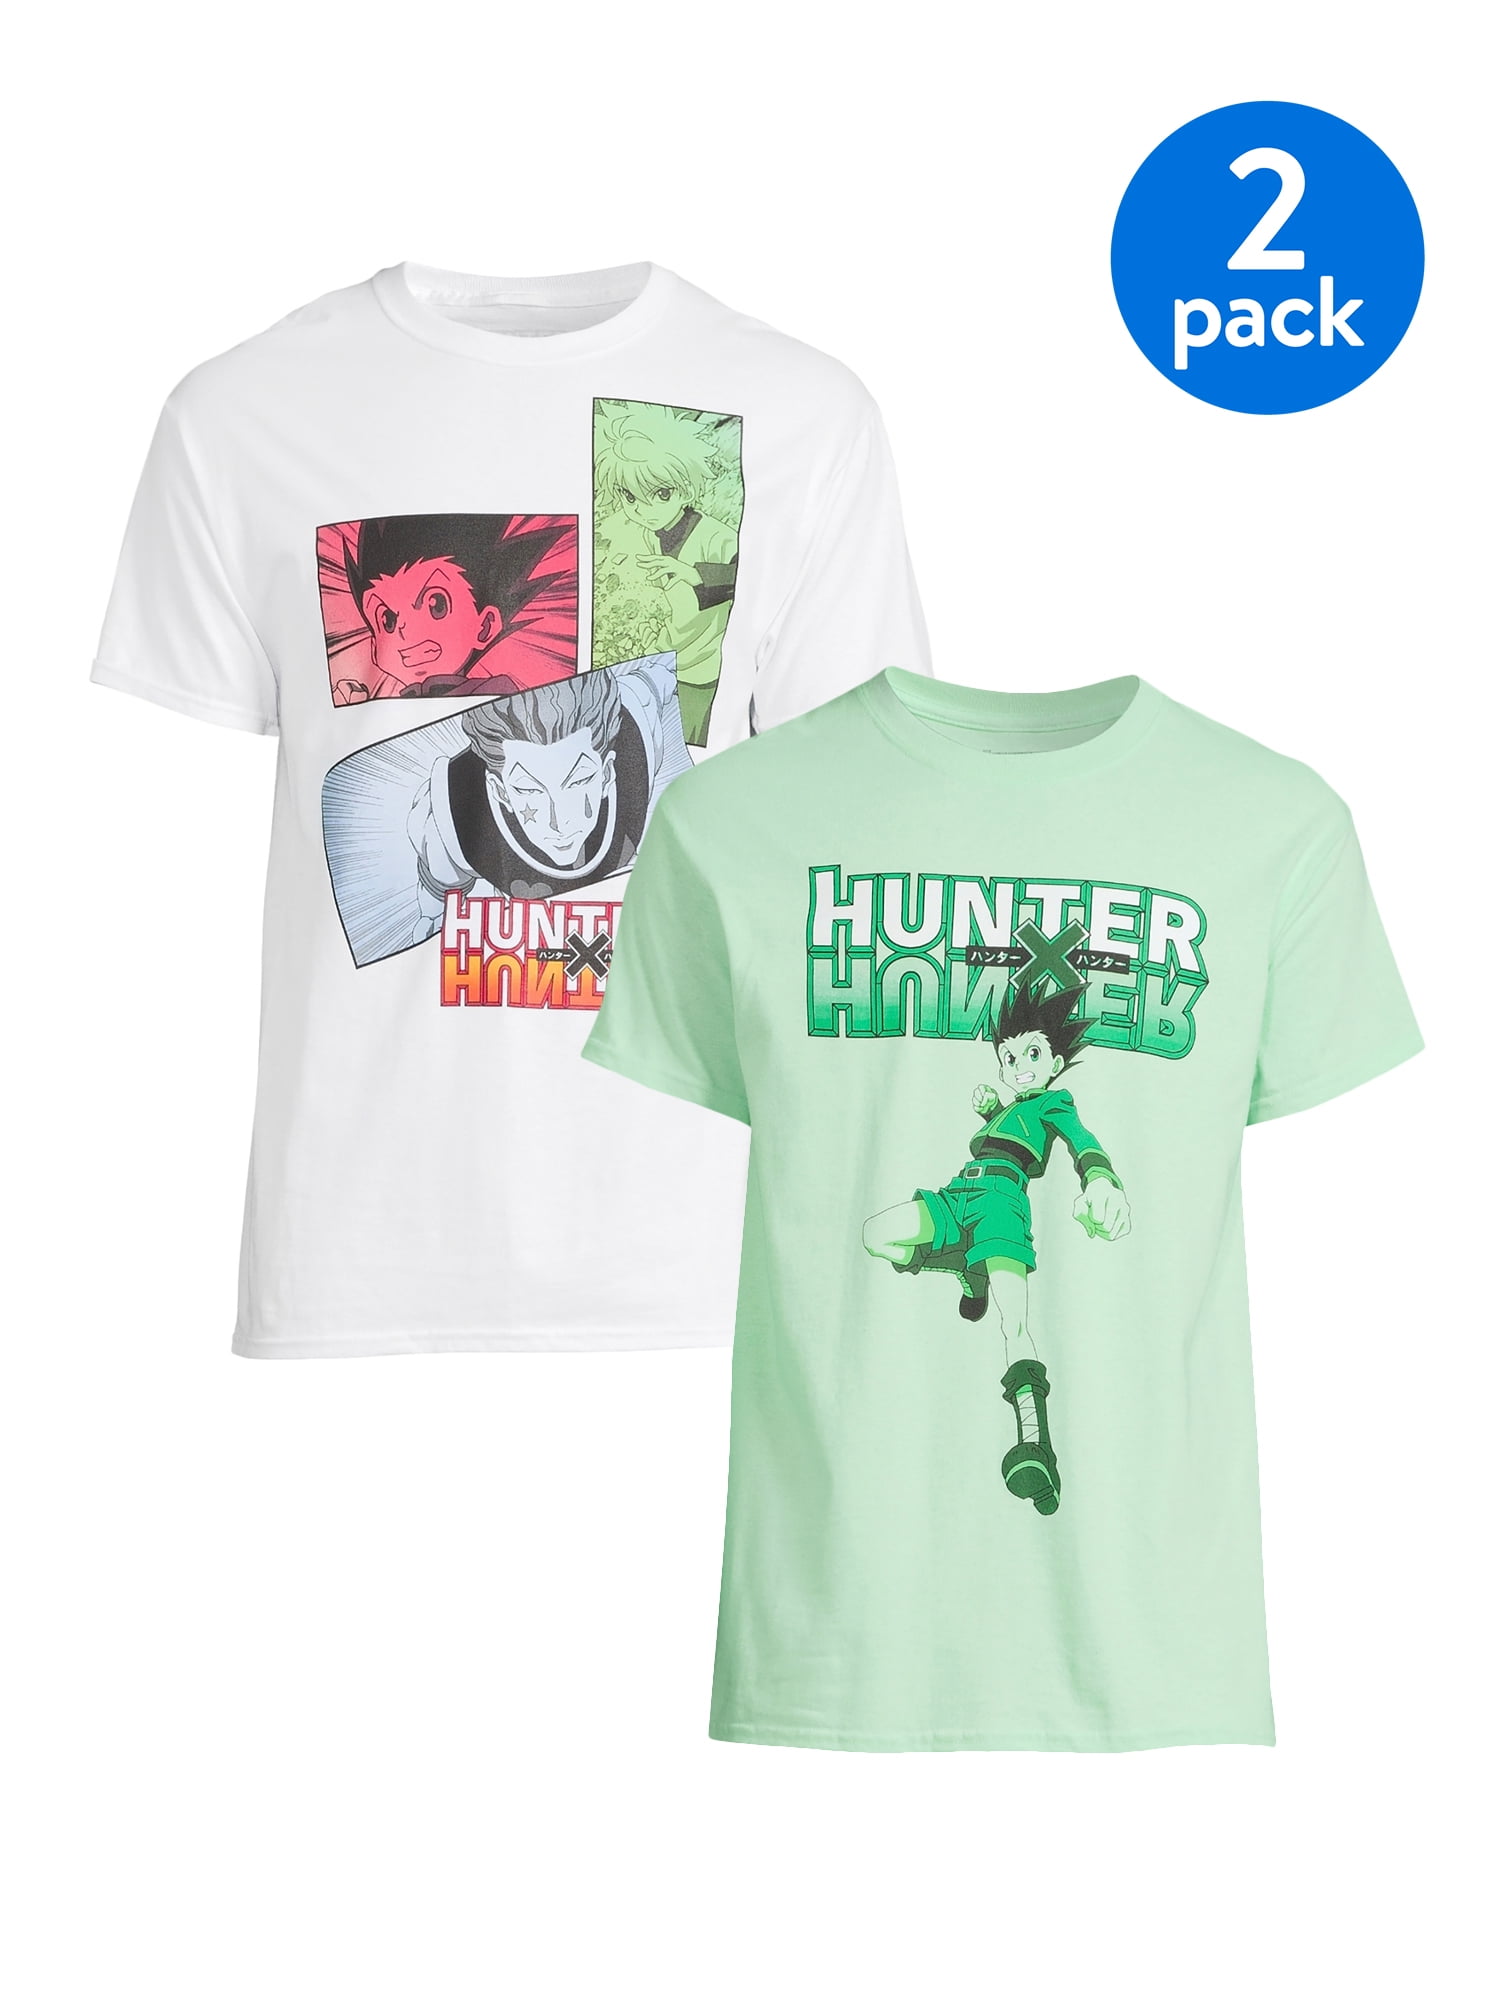 Hunters - Jonah Heidelbaum, A Hero With Chutzpah! Premium T-Shirt